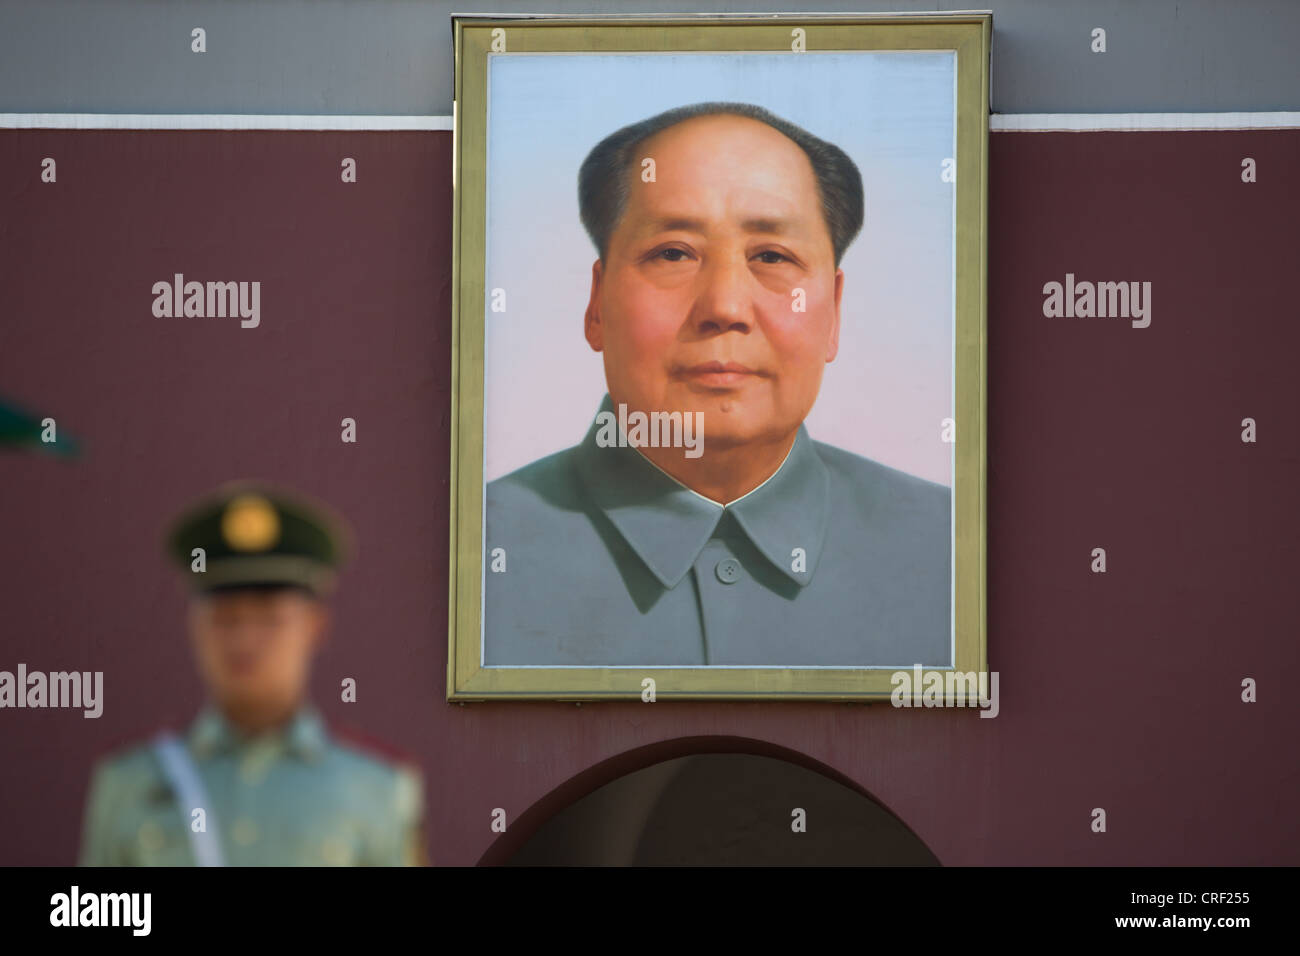 Porte de la paix céleste, avec portrait de Mao Zedong, à l'entrée de la Cité Interdite, Sq Tiananmen, Pékin, Chine. Banque D'Images